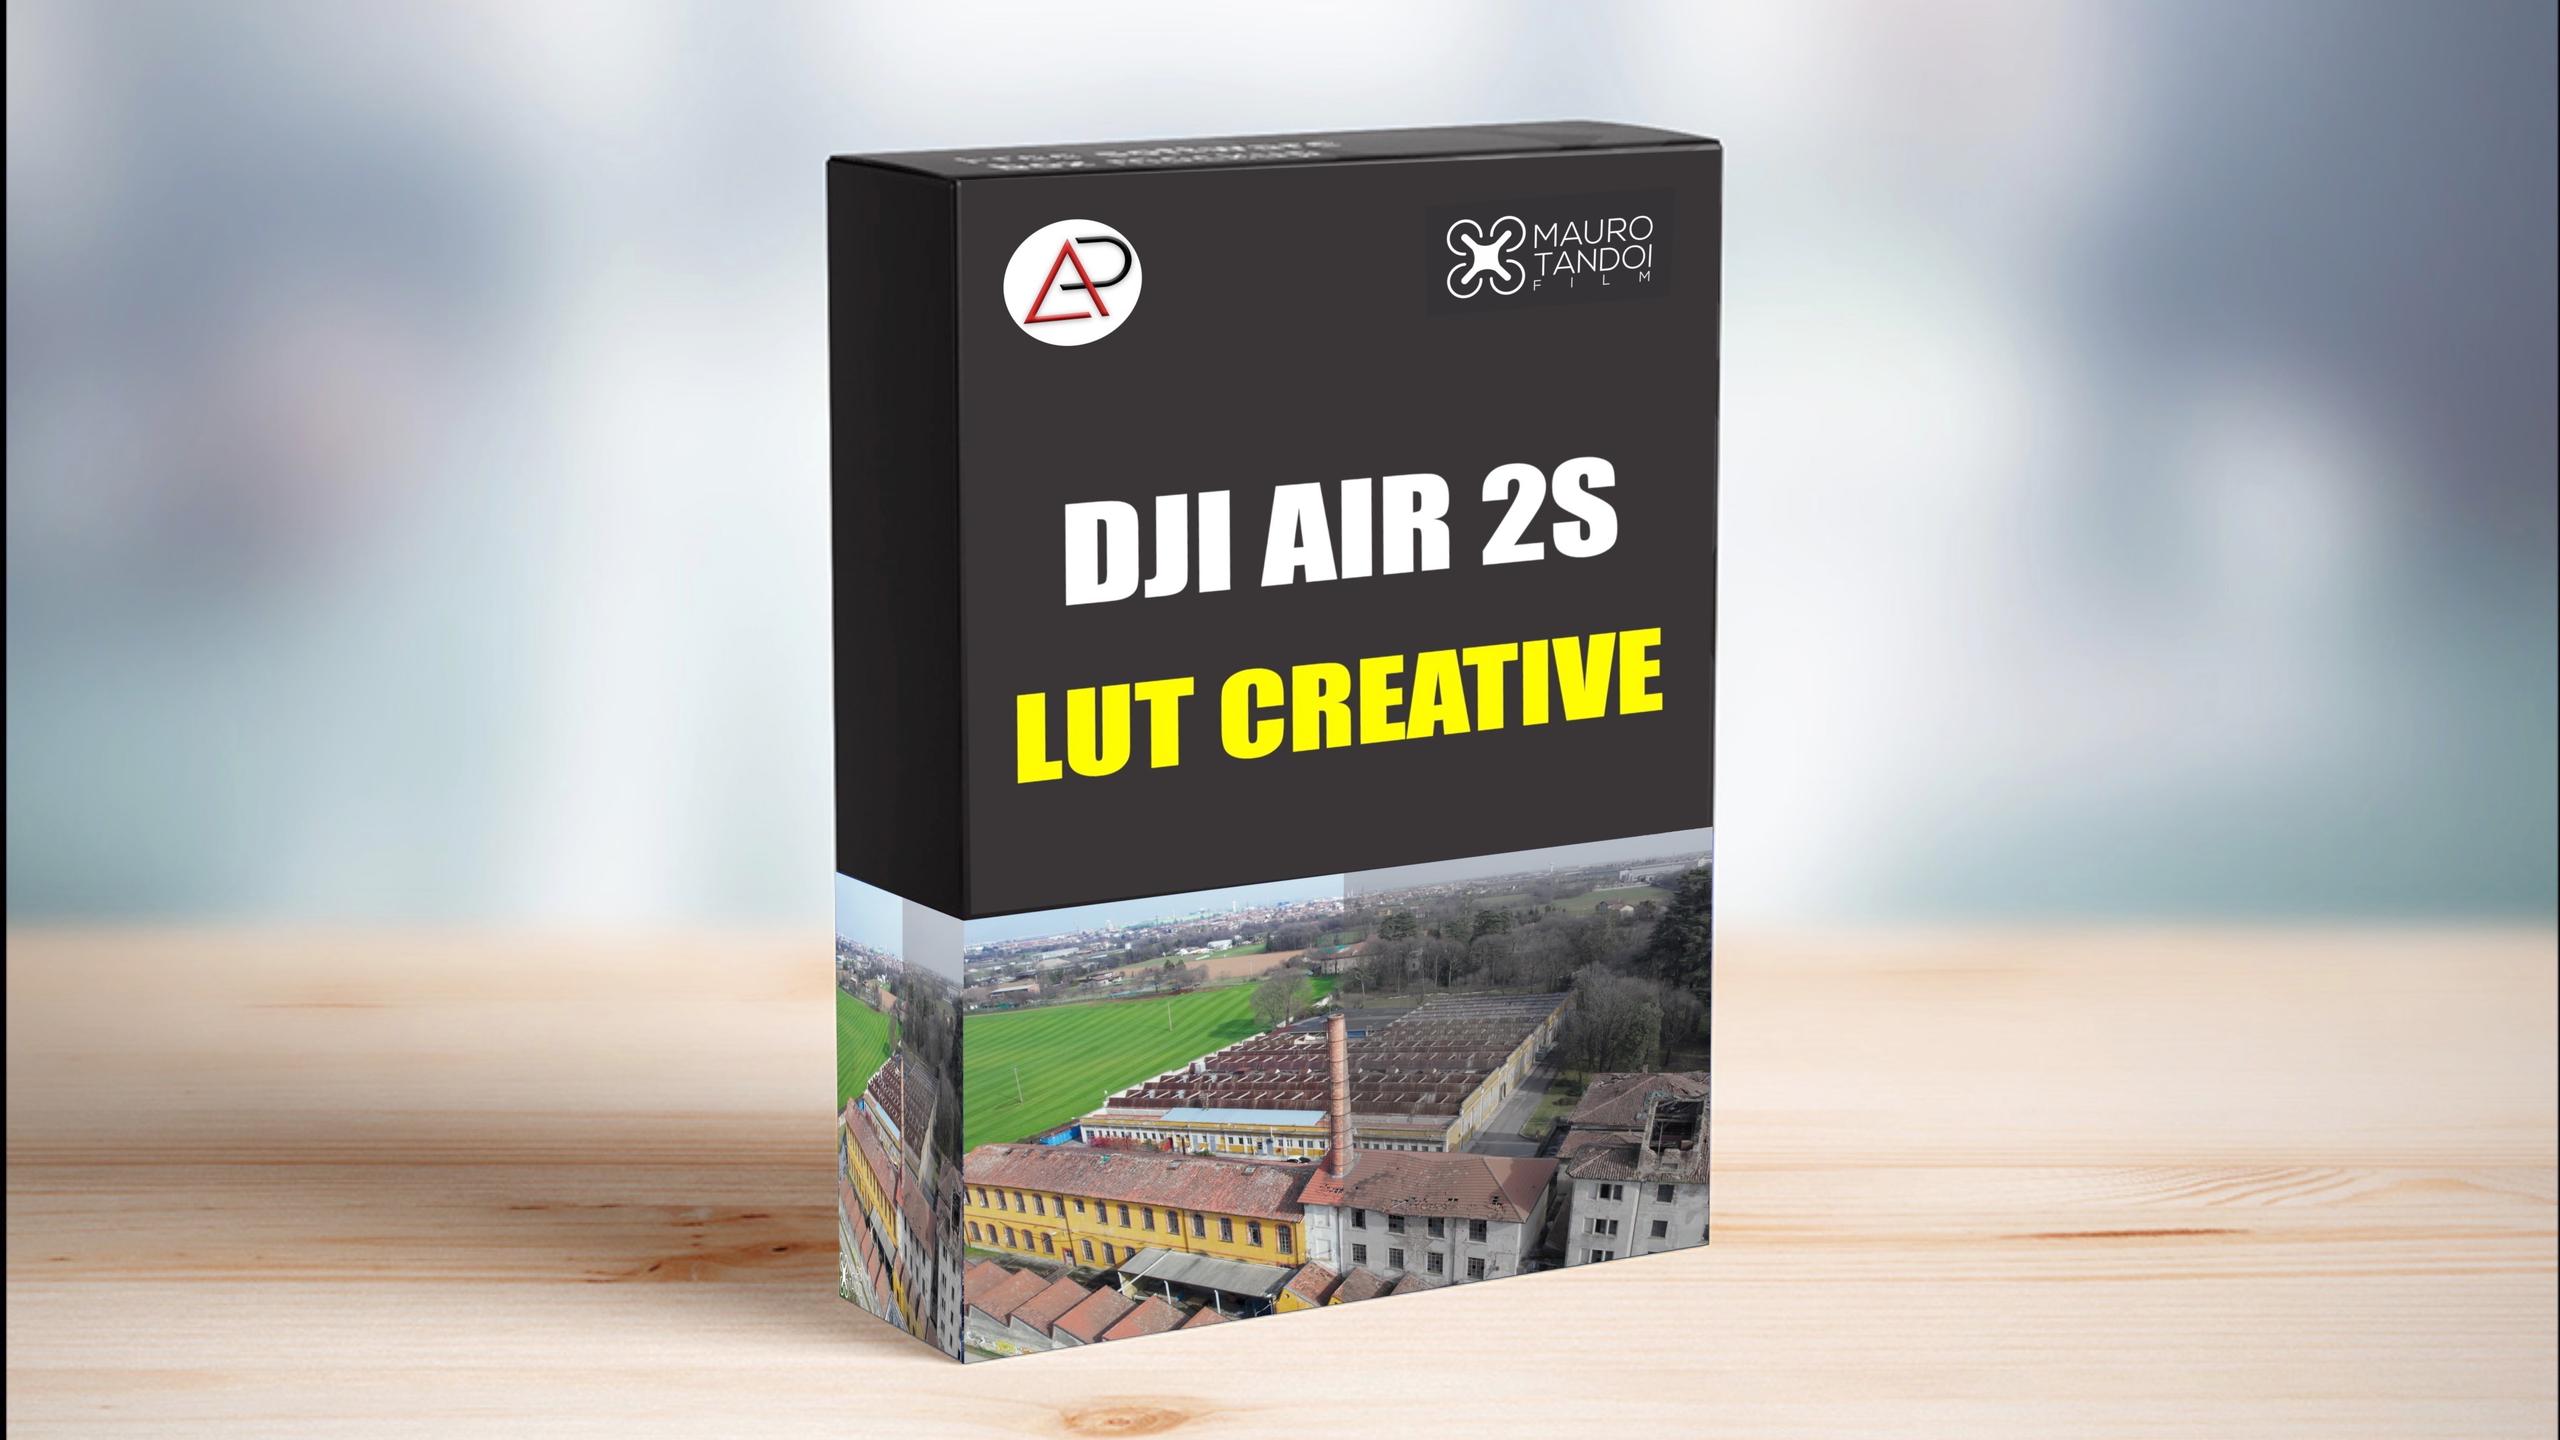 DJI AIR 2S LUT CREATIVE